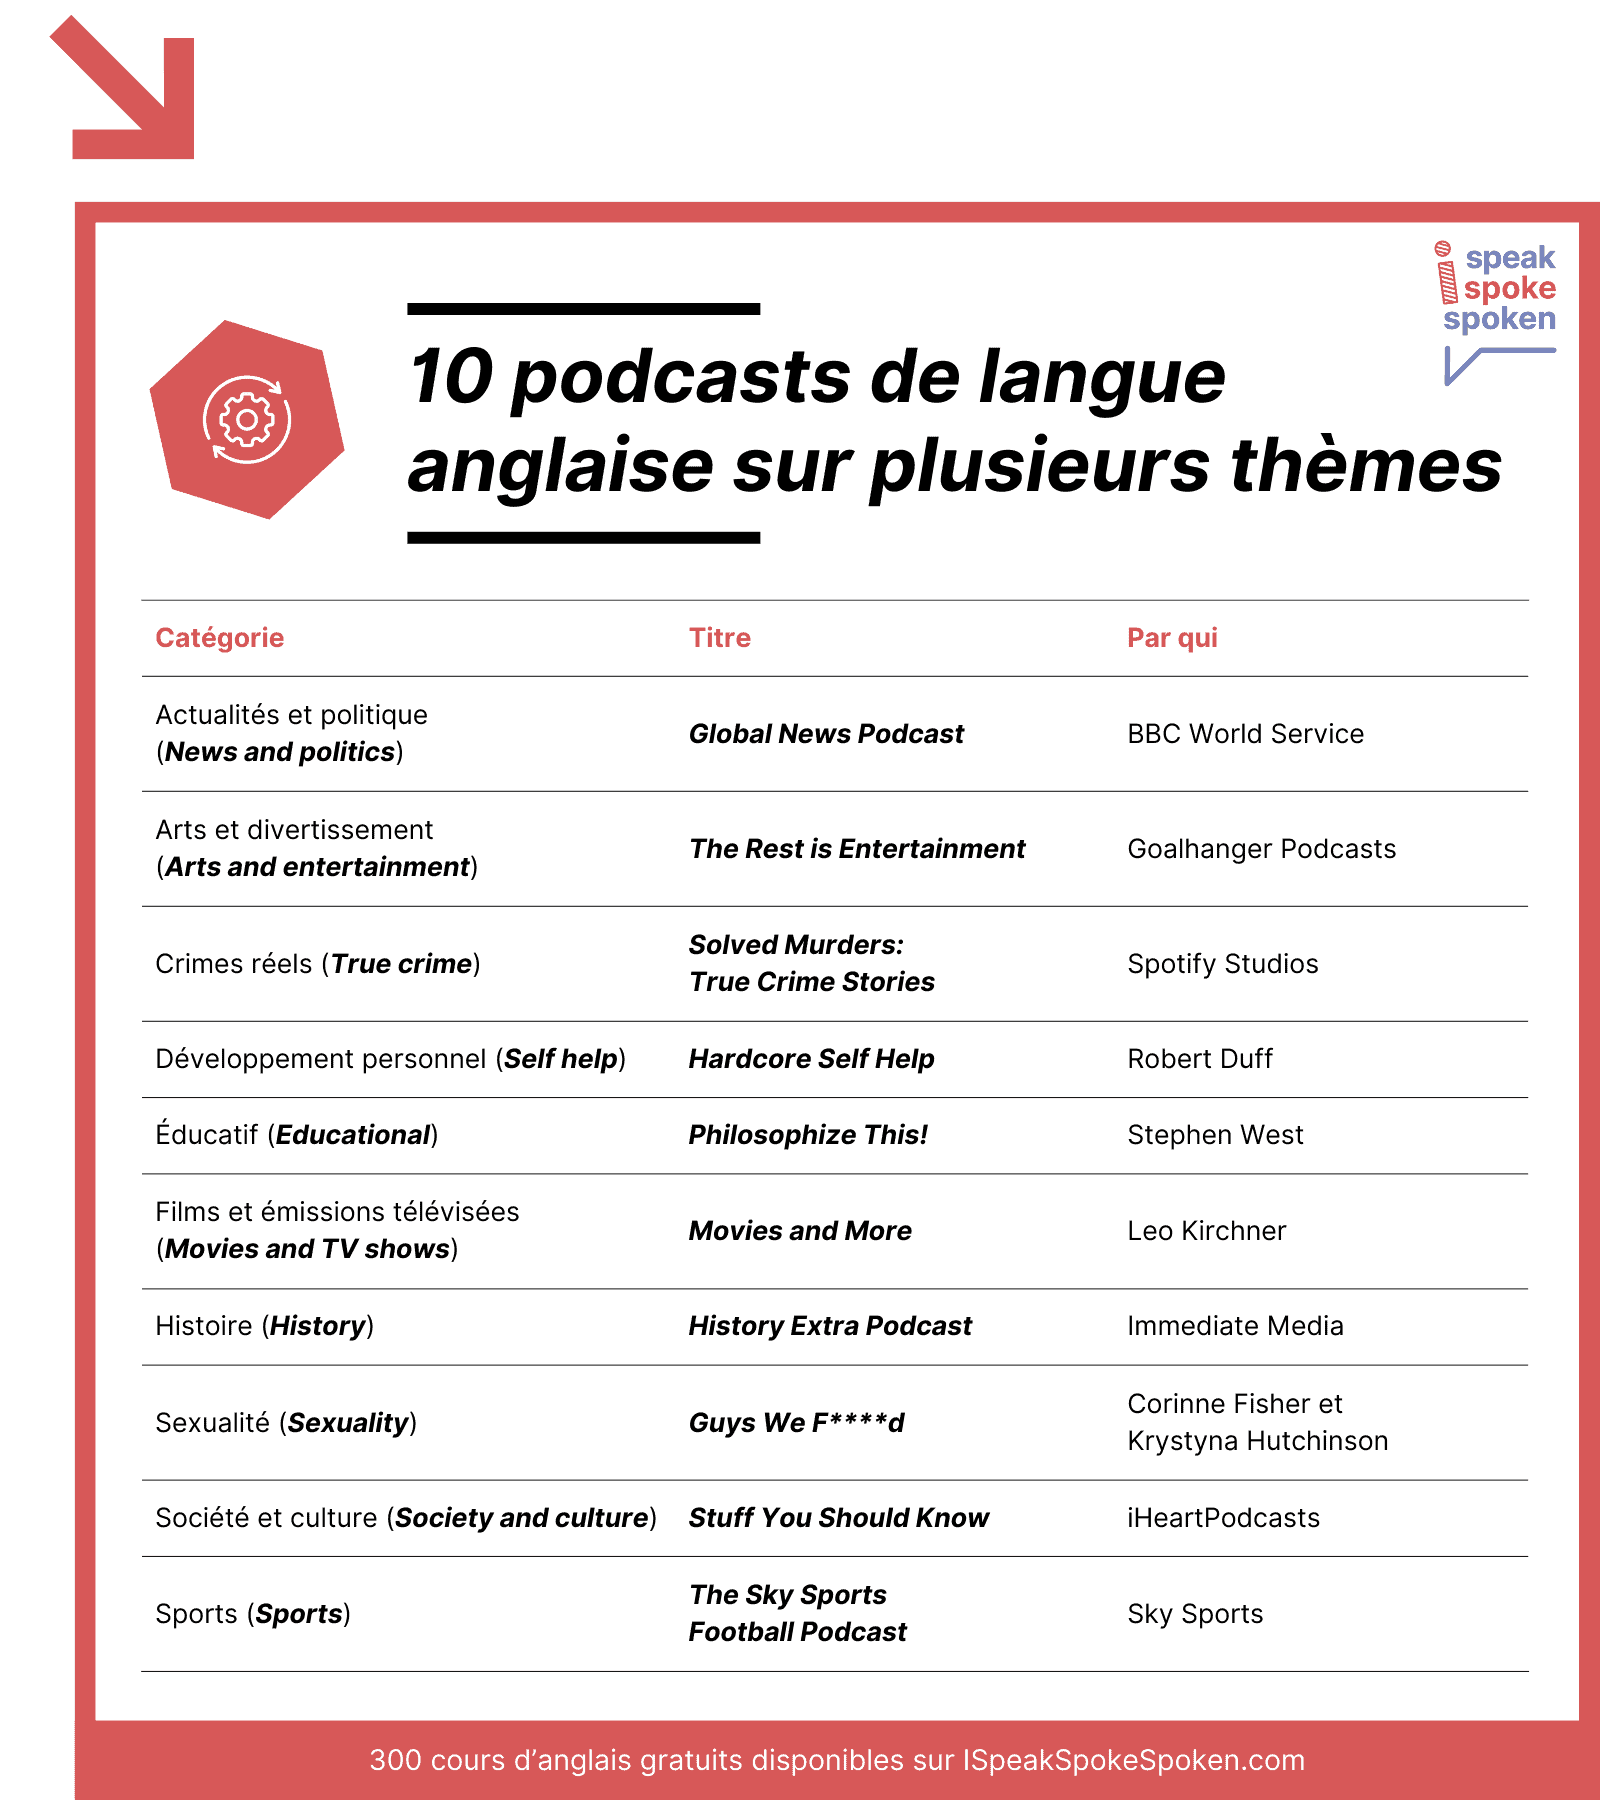 10 podcasts de langue anglaise sur des thèmes variés